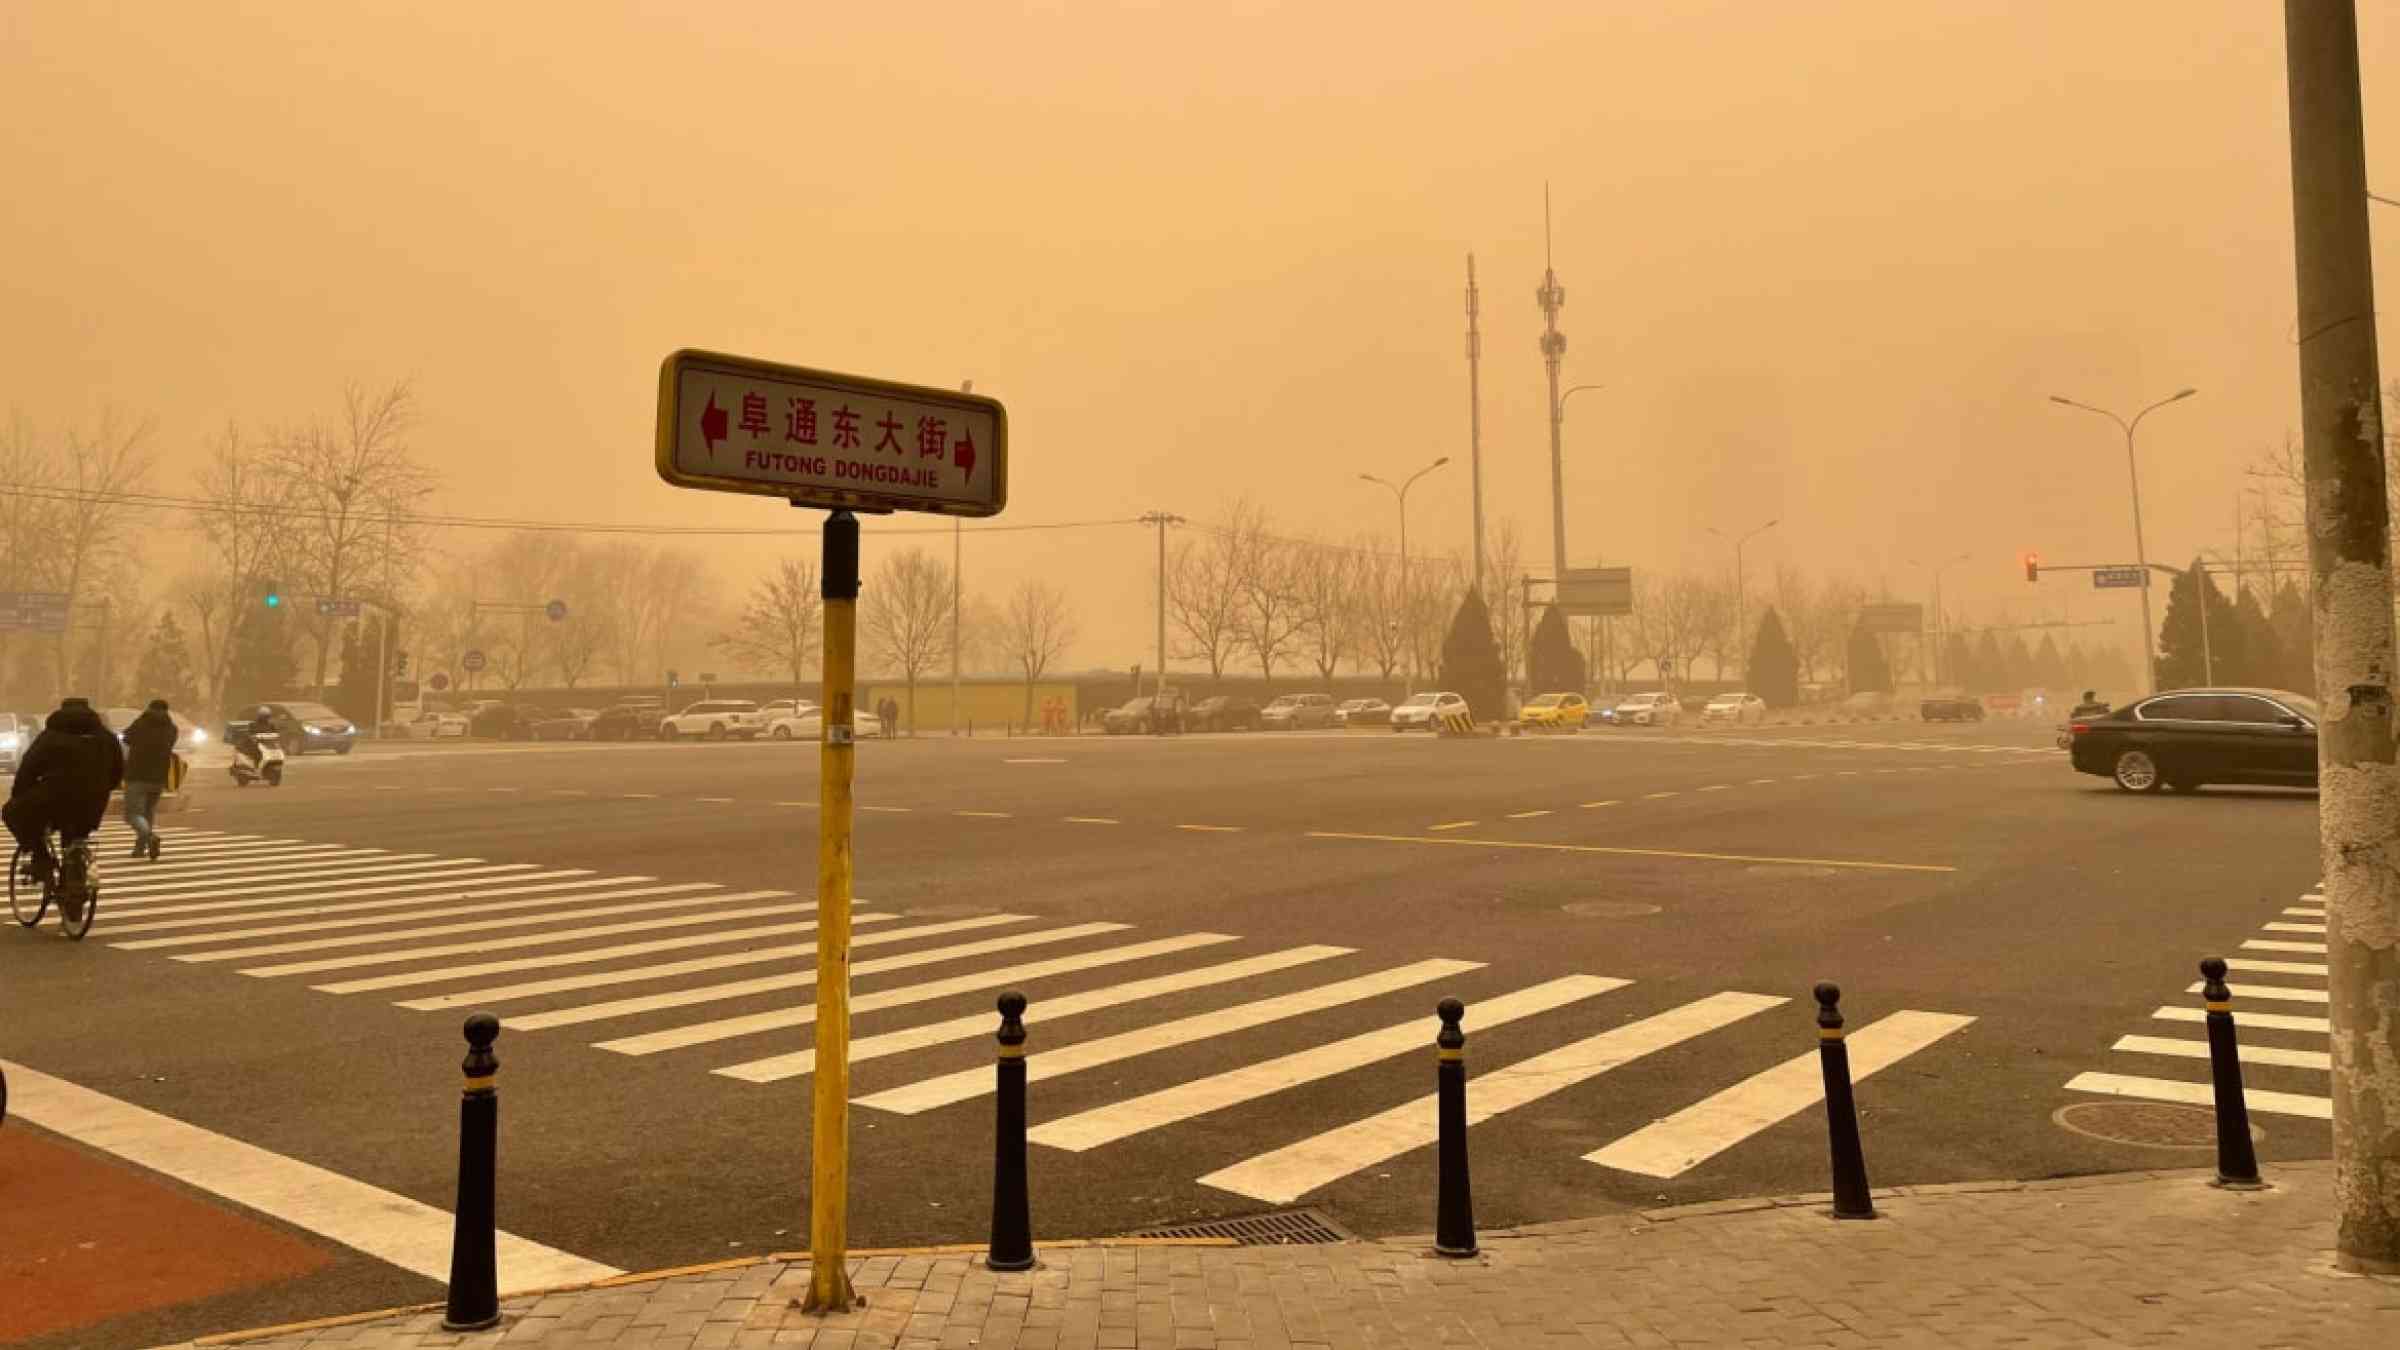 Street corner in Beijing during a Sandstorm.